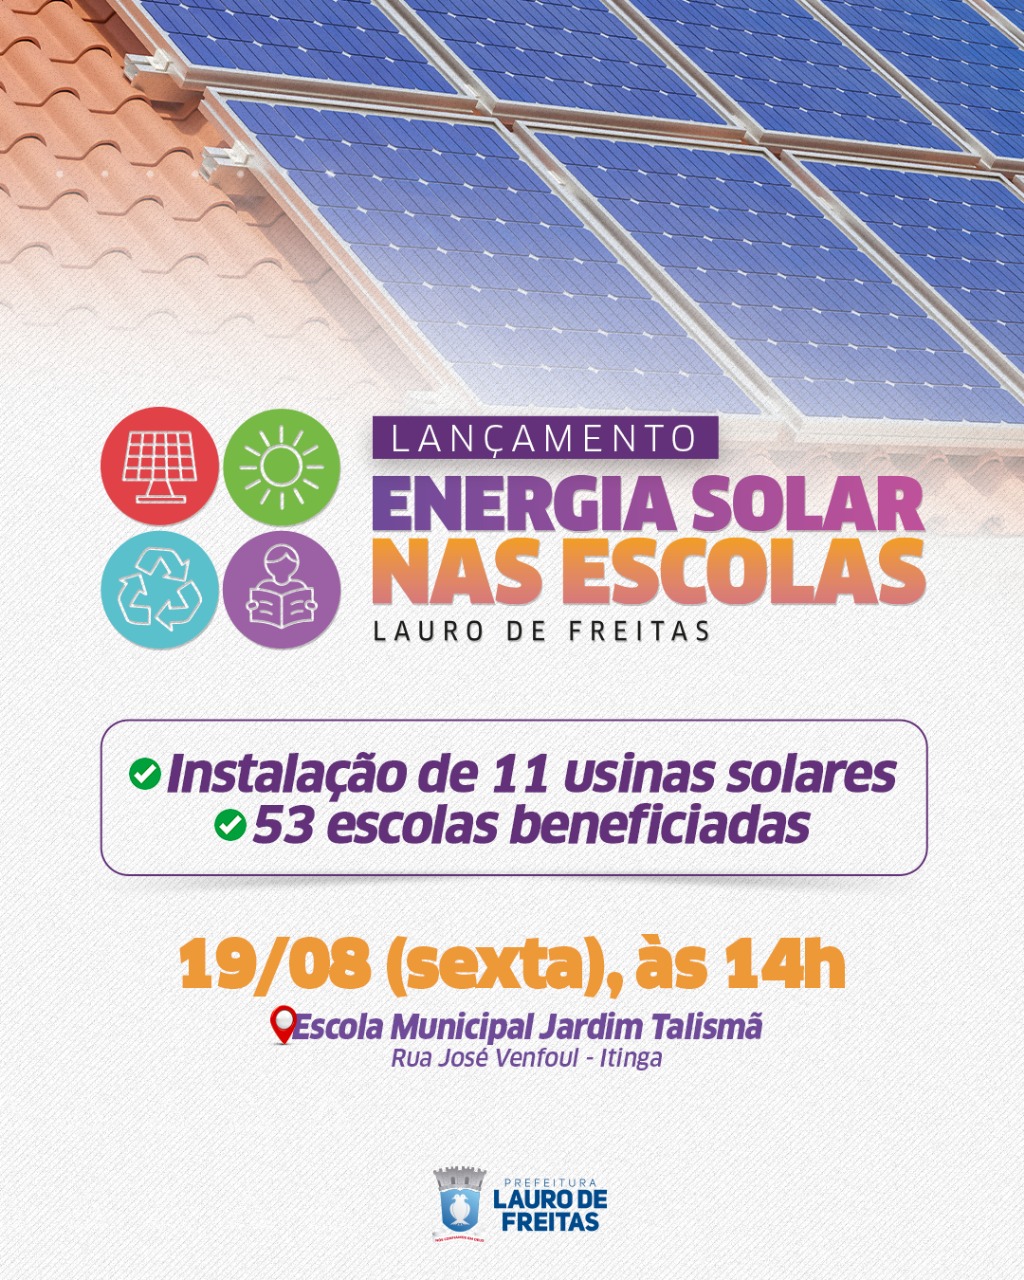 Energia solar ser� implantada em 53 escolas municipais de Lauro de Freitas